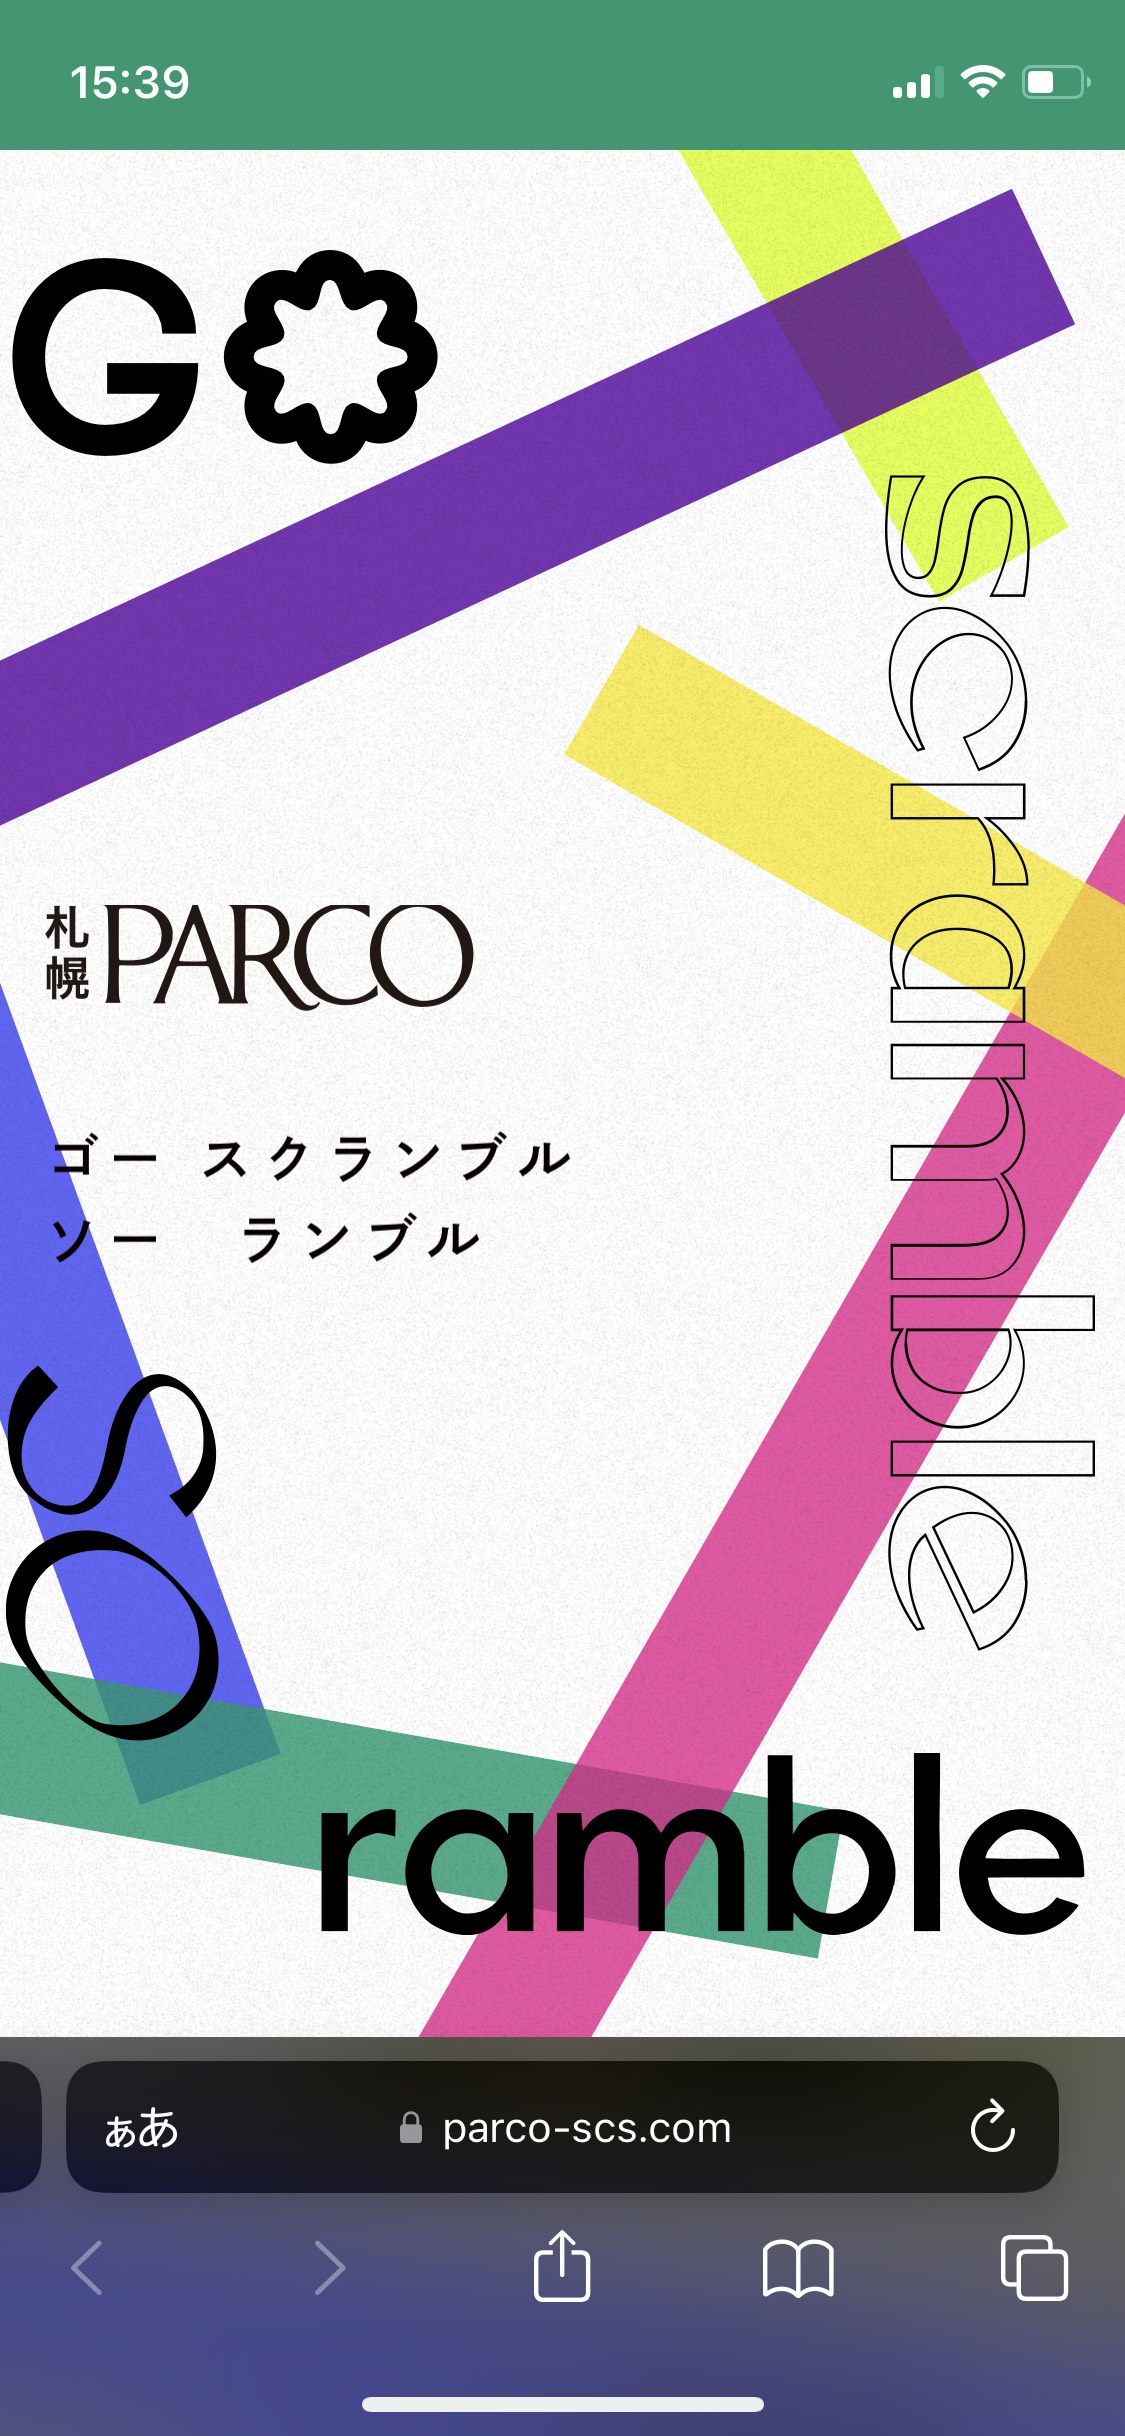 スマートフォンデザイン 札幌PARCO GO scramble SO ramble